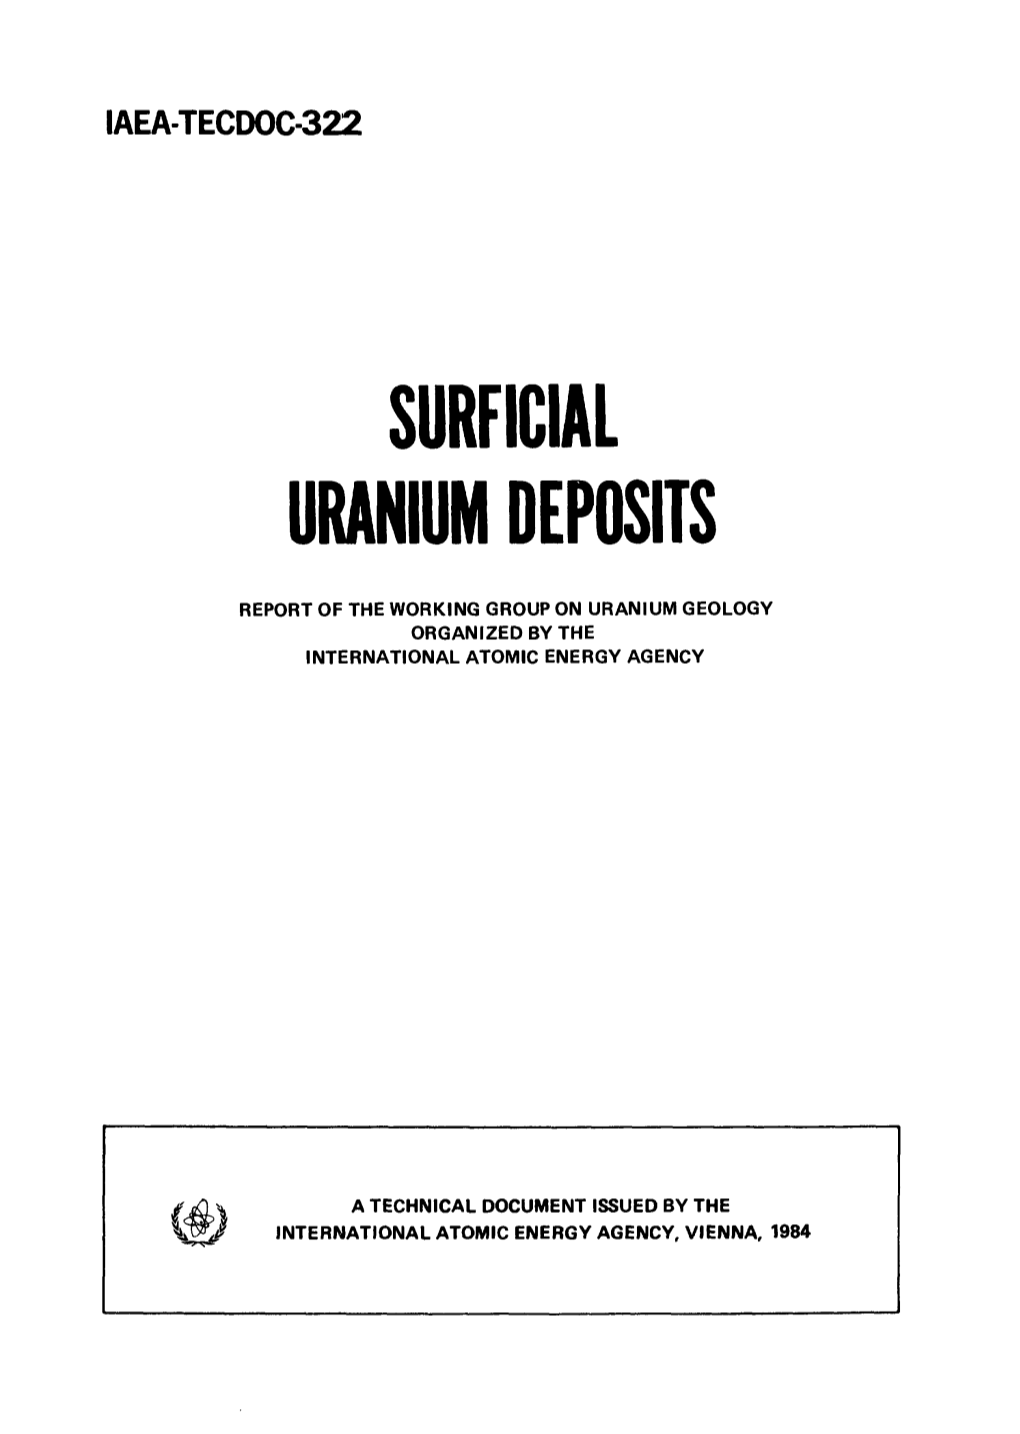 Surficial Uranium Deposits